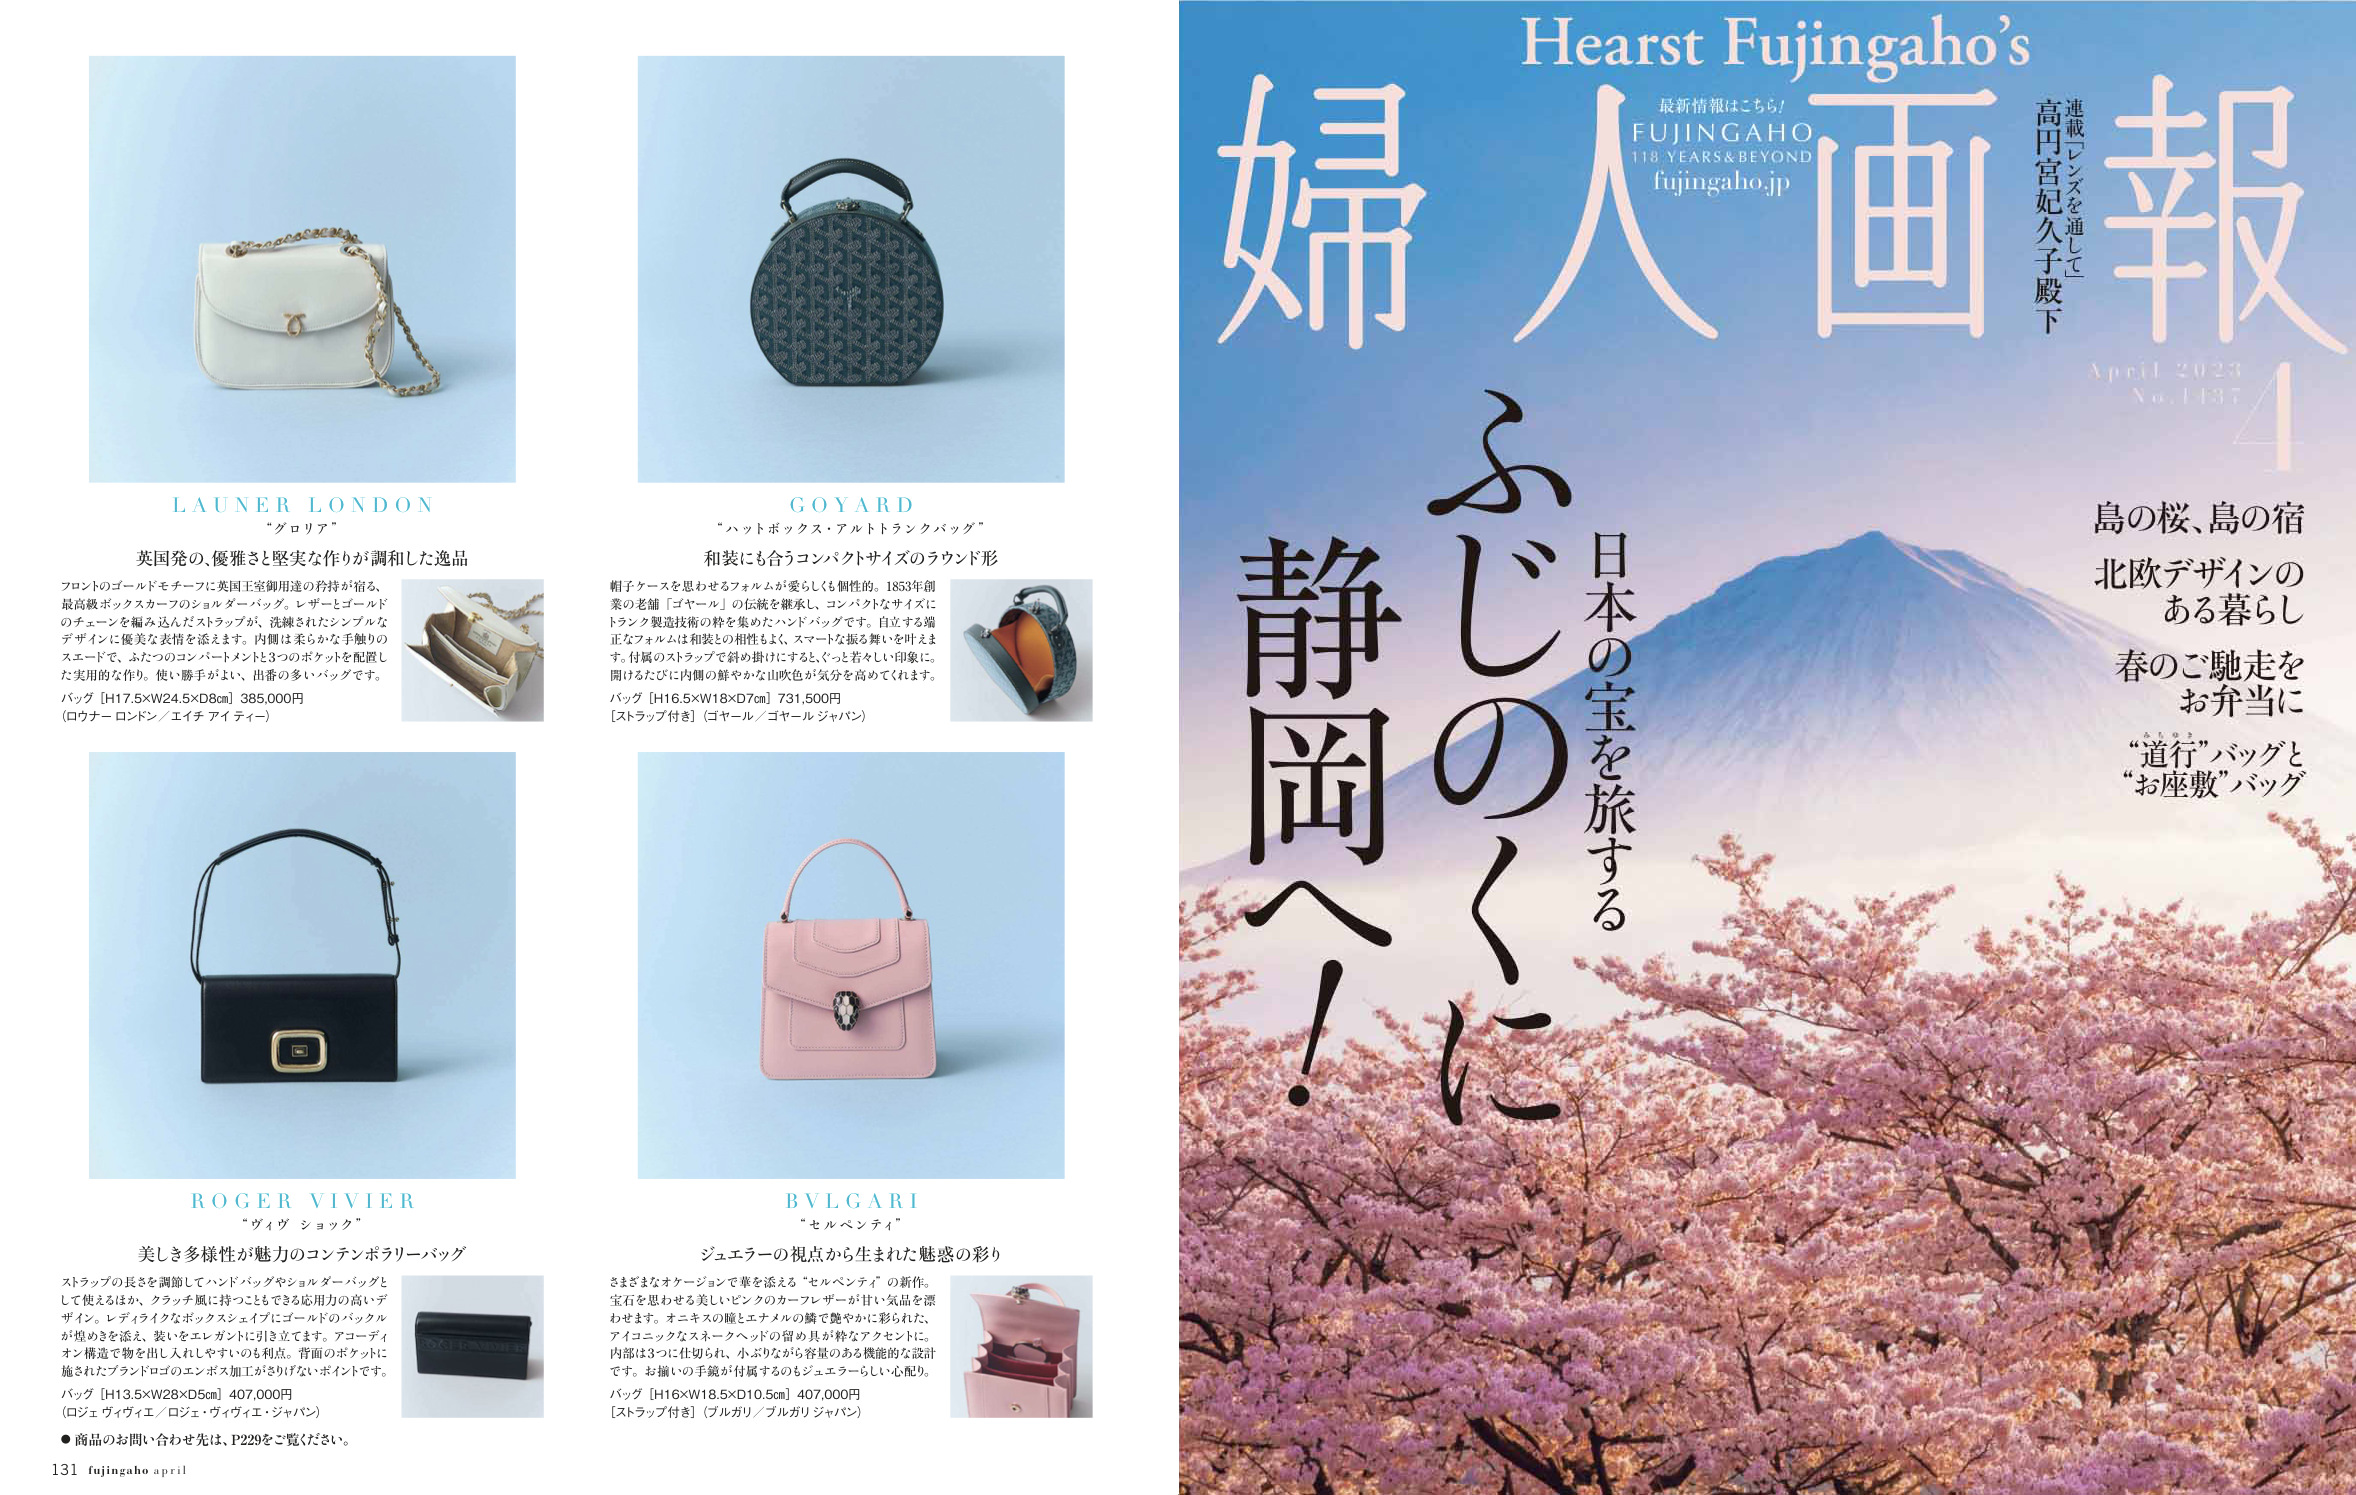 Launer London handbag is introduced in 『 FUZINGAHOU 』 magazine.